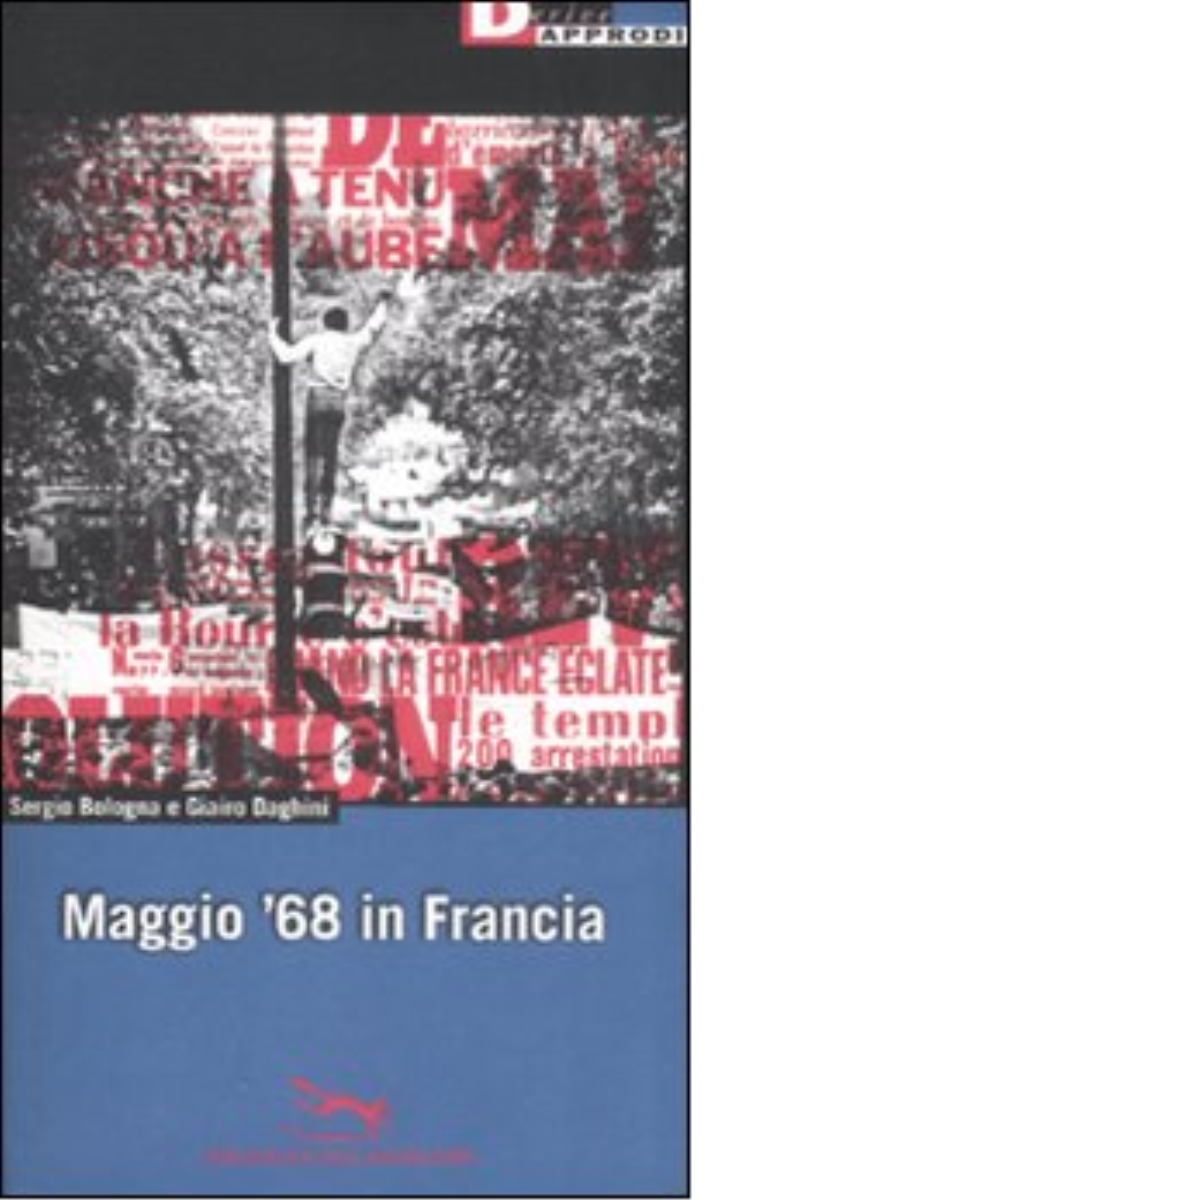 MAGGIO '68 IN FRANCIA di SERGIO BOLOGNA - DeriveApprodi editore, 2008